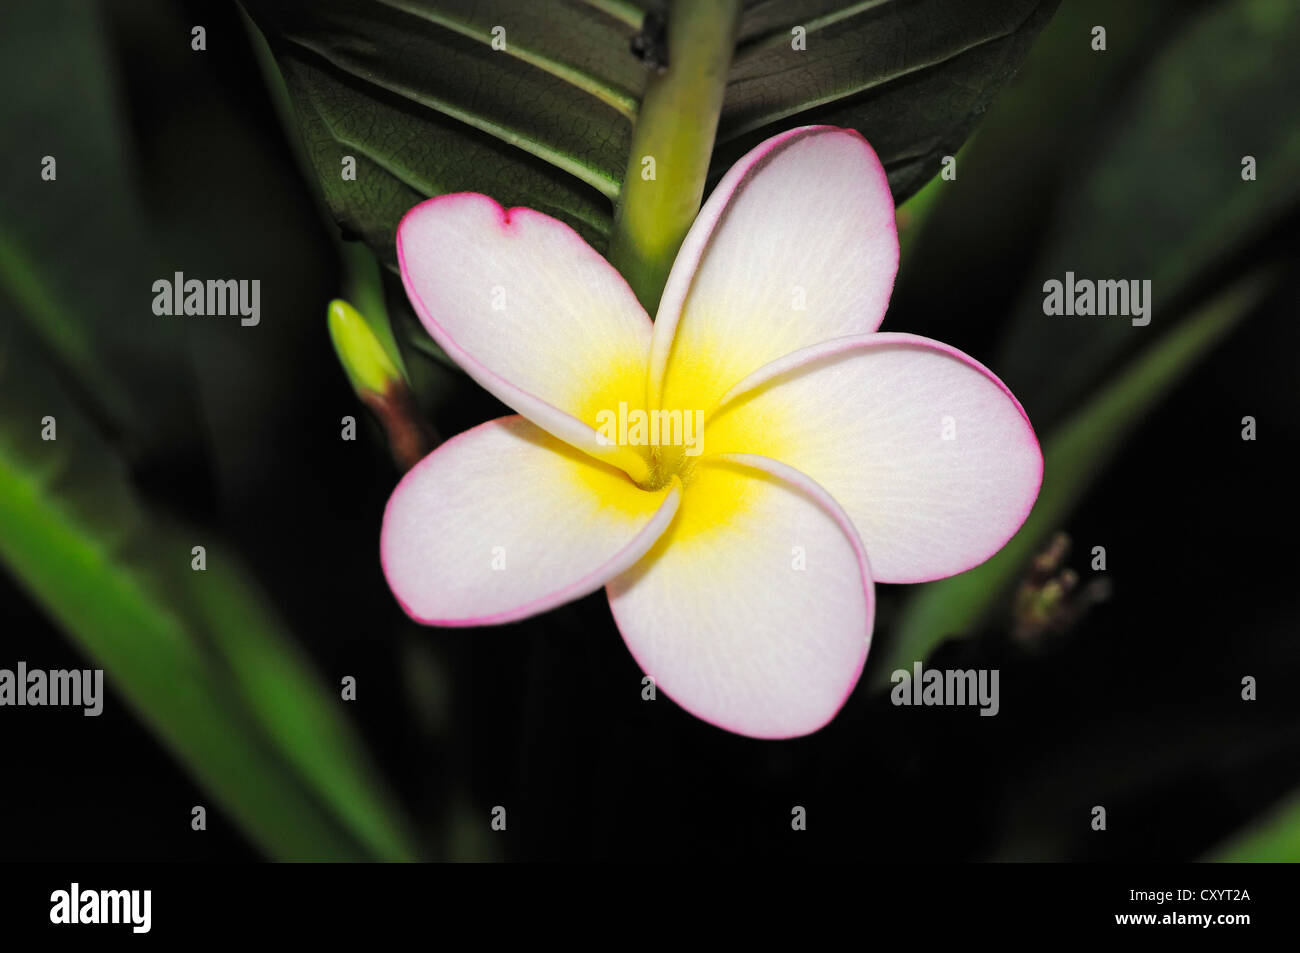 Das Temple Tree, Plumeria oder Frangipani (Plumeria Rubra) Blume, ursprünglich aus Mittelamerika, Zierpflanze Stockfoto